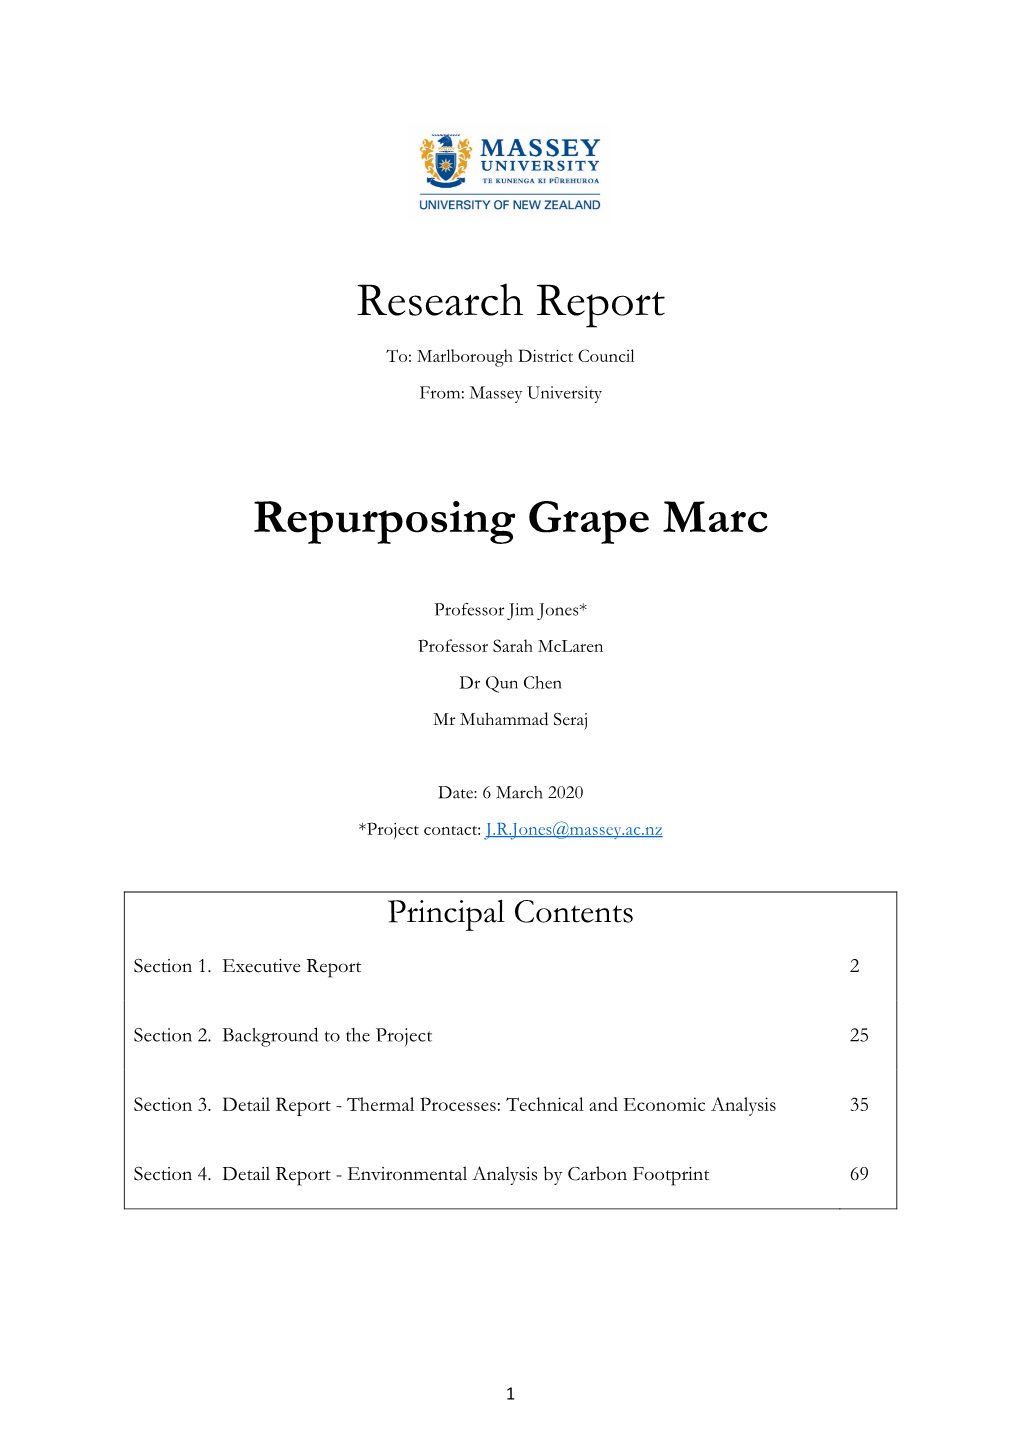 Repurposing Grape Marc Report